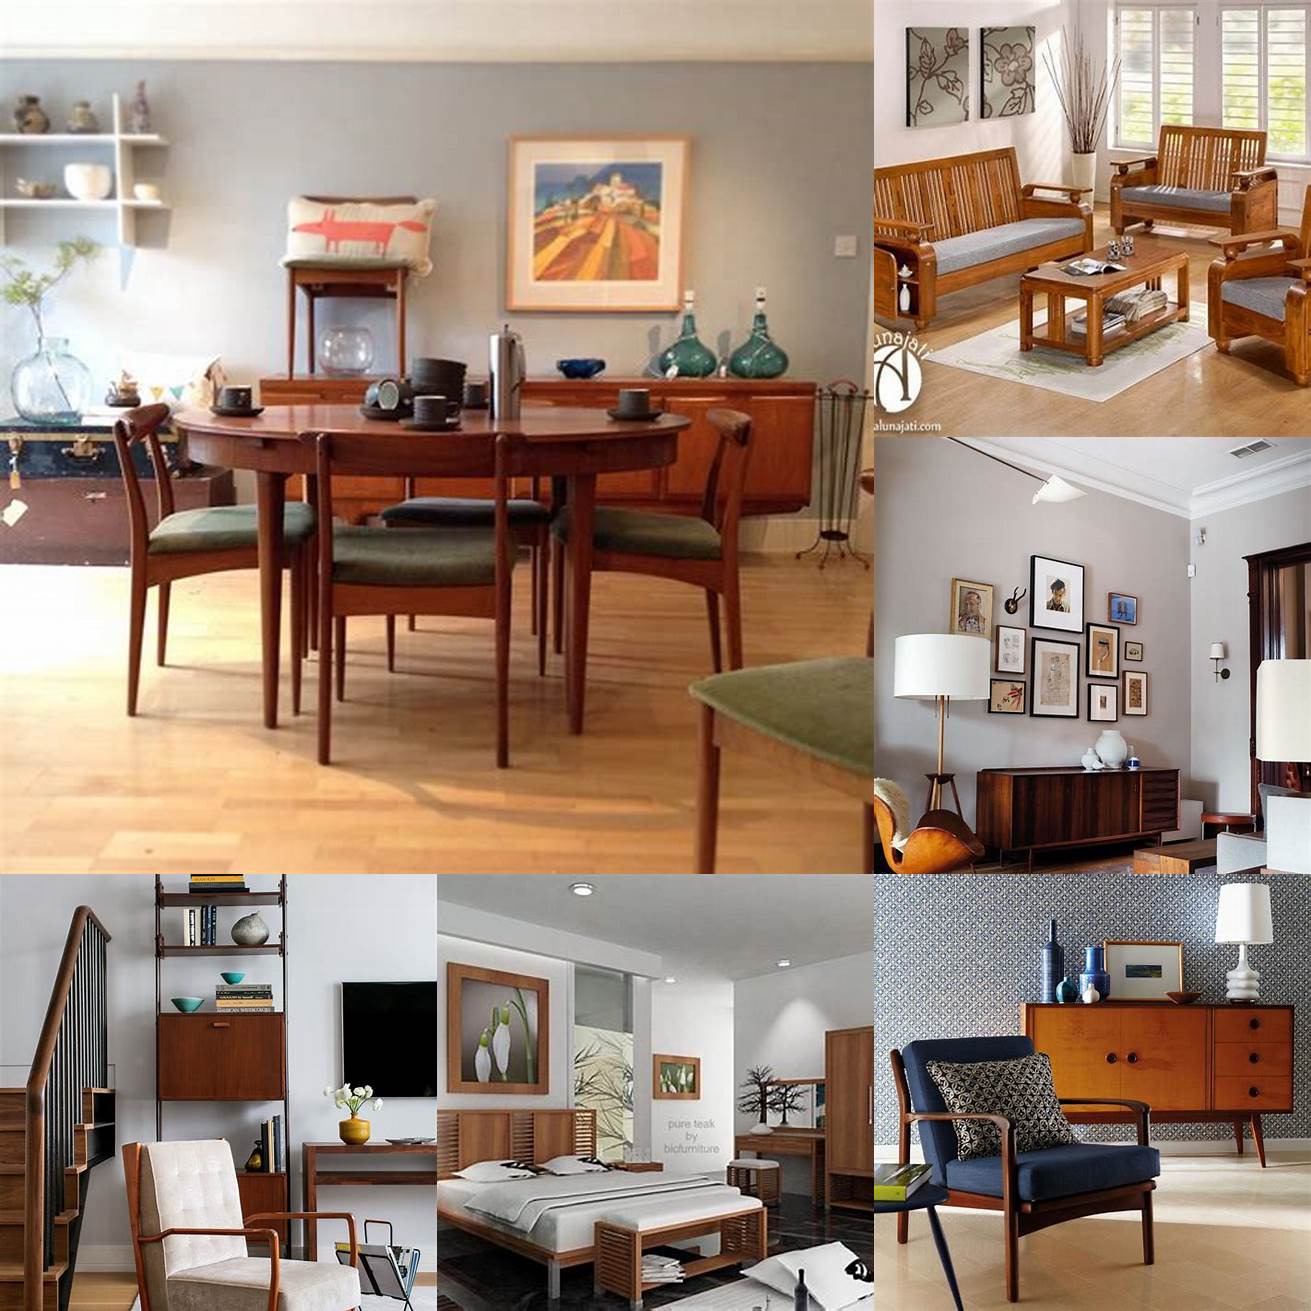 Teak Furniture in Different Rooms